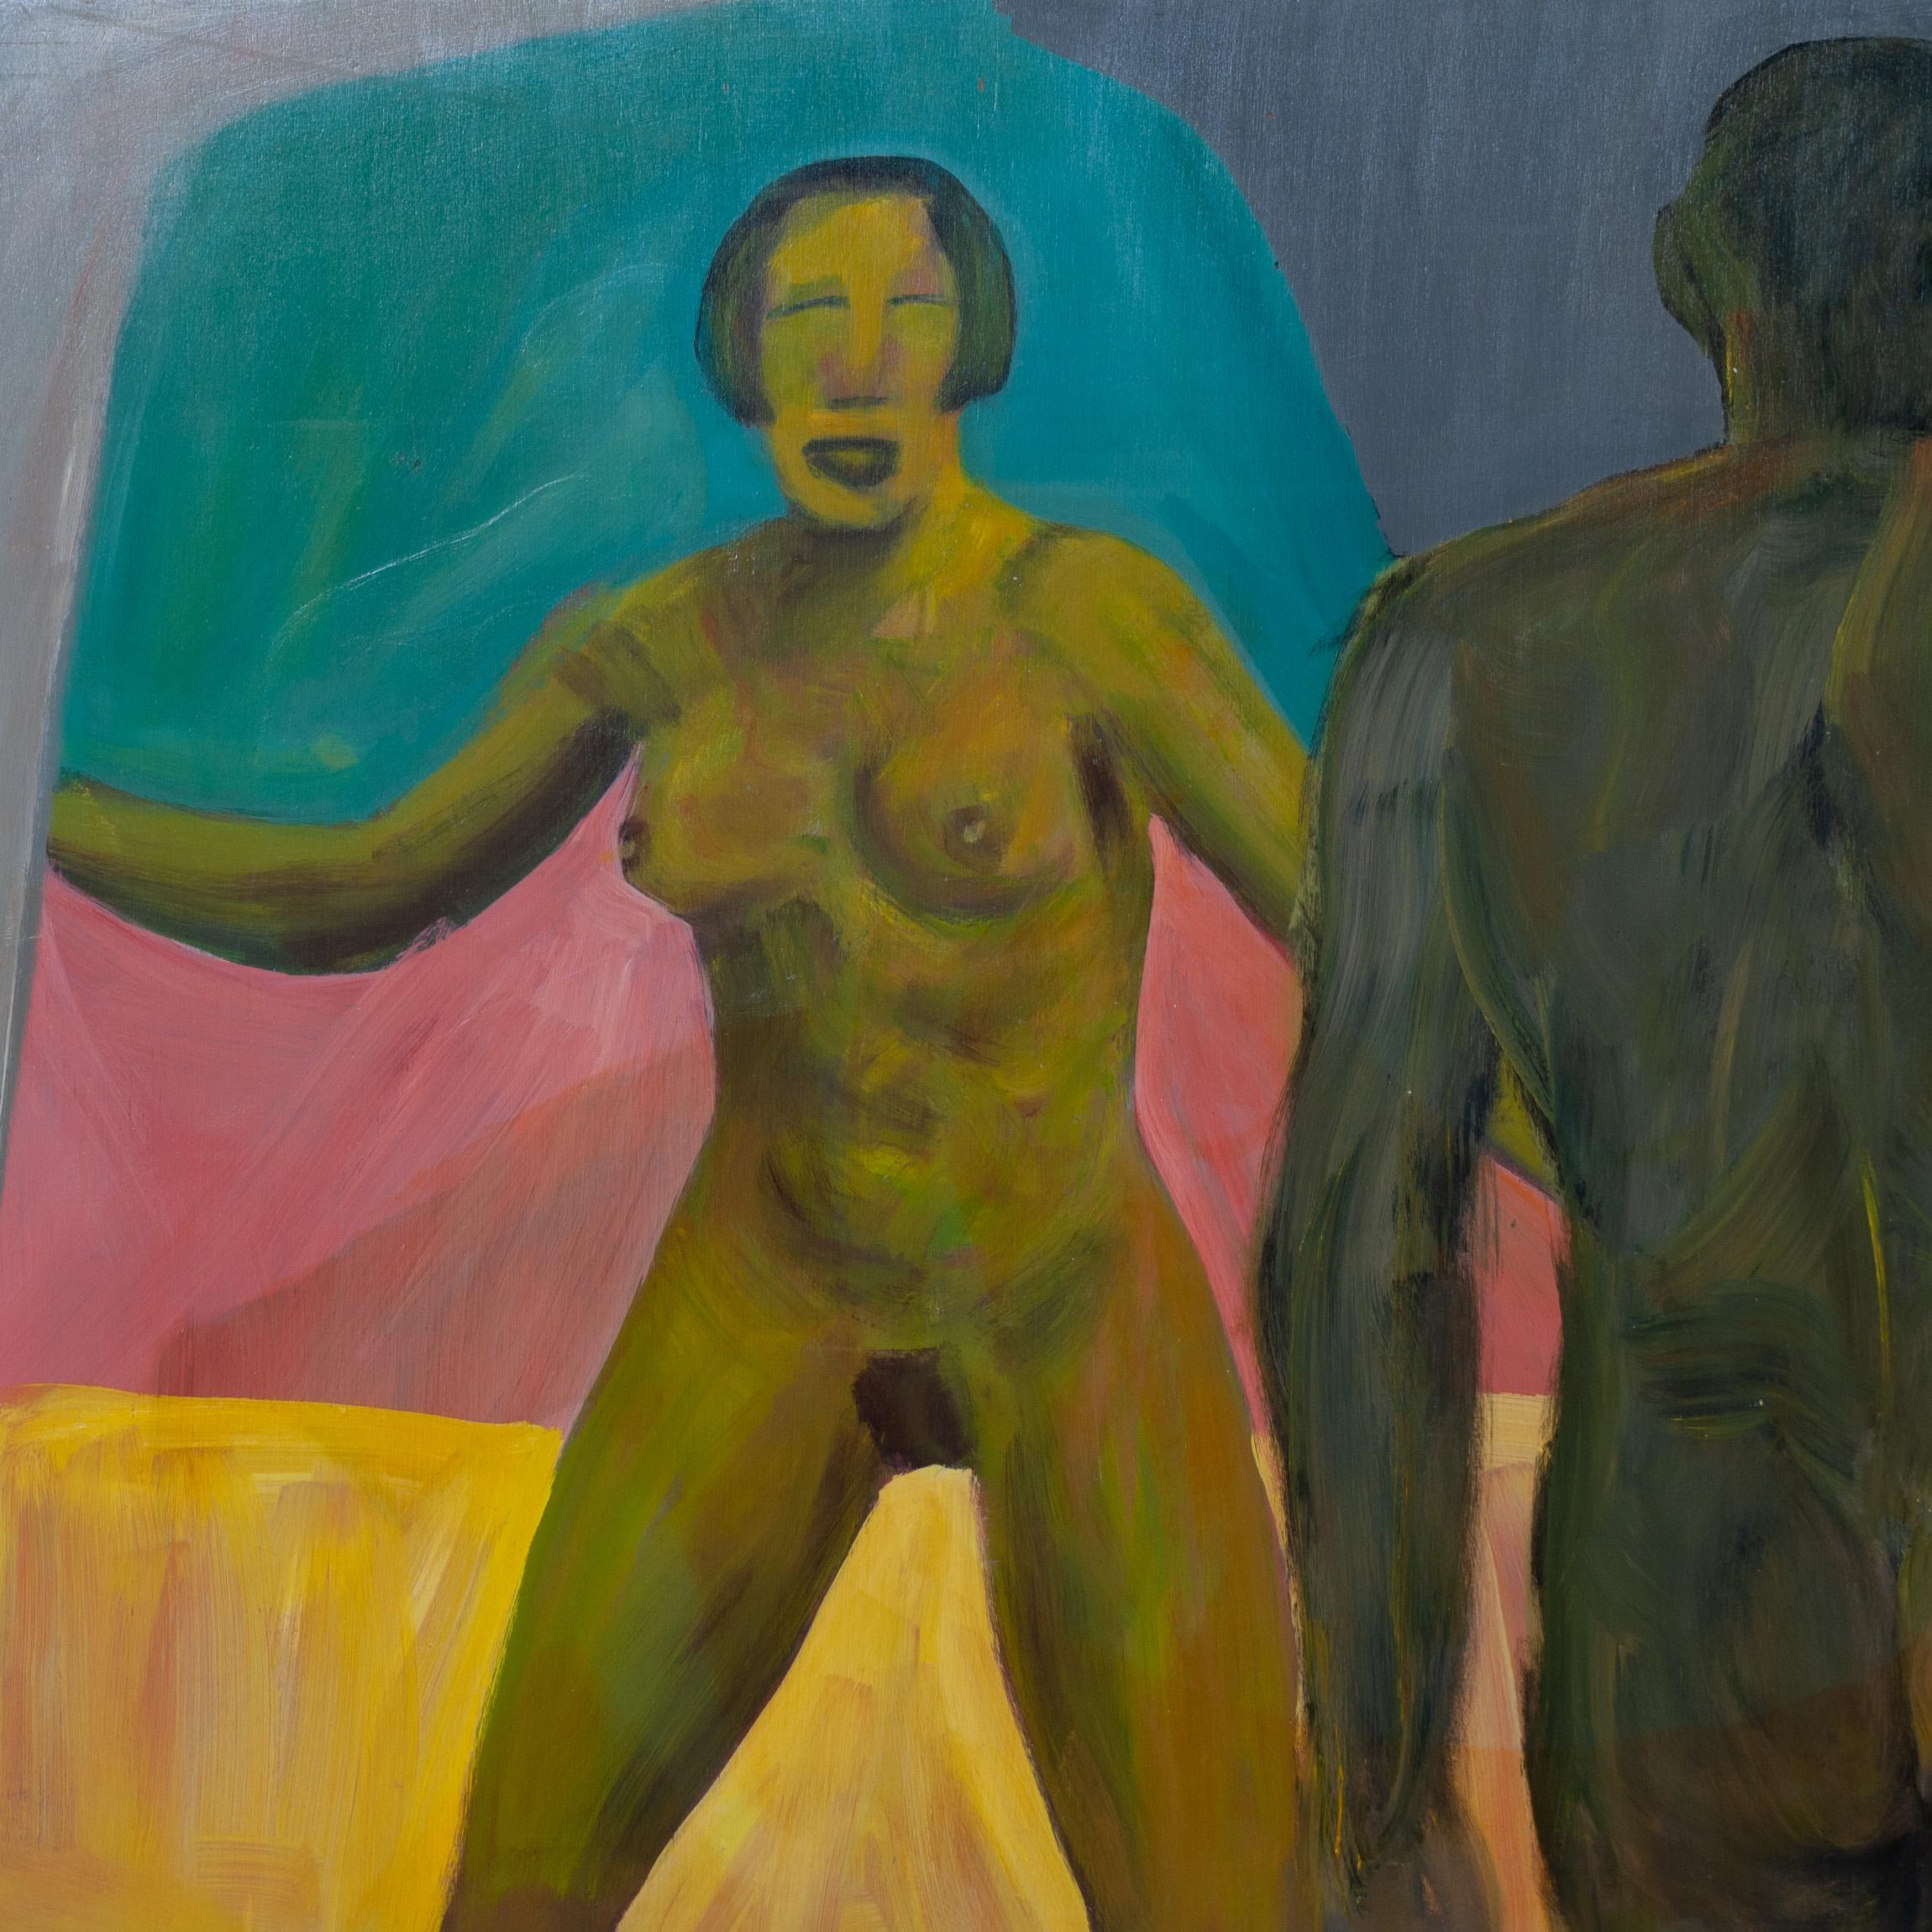 Ein großes Ölgemälde auf Sperrholzplatte des französischen Künstlers Roland Gautier. Eine surreale figurative Beobachtung der weiblichen form A, die einem männlichen Körper im Vordergrund gegenübersteht. Farbenfroh und plakativ mit einem Hauch von